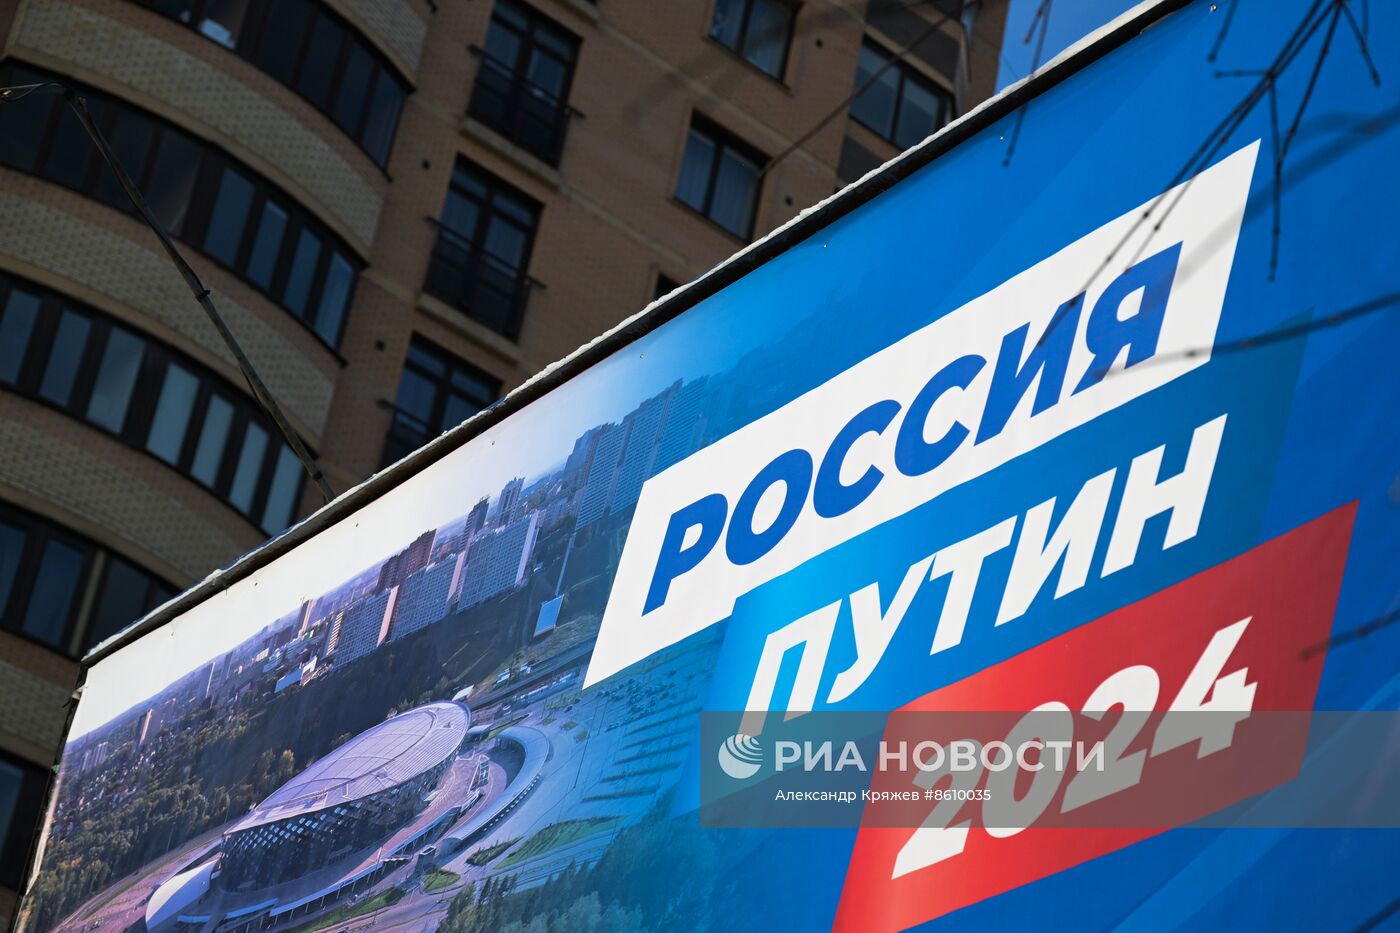 Предвыборная агитация в поддержку кандидата в президенты РФ В. Путина в Новосибирске